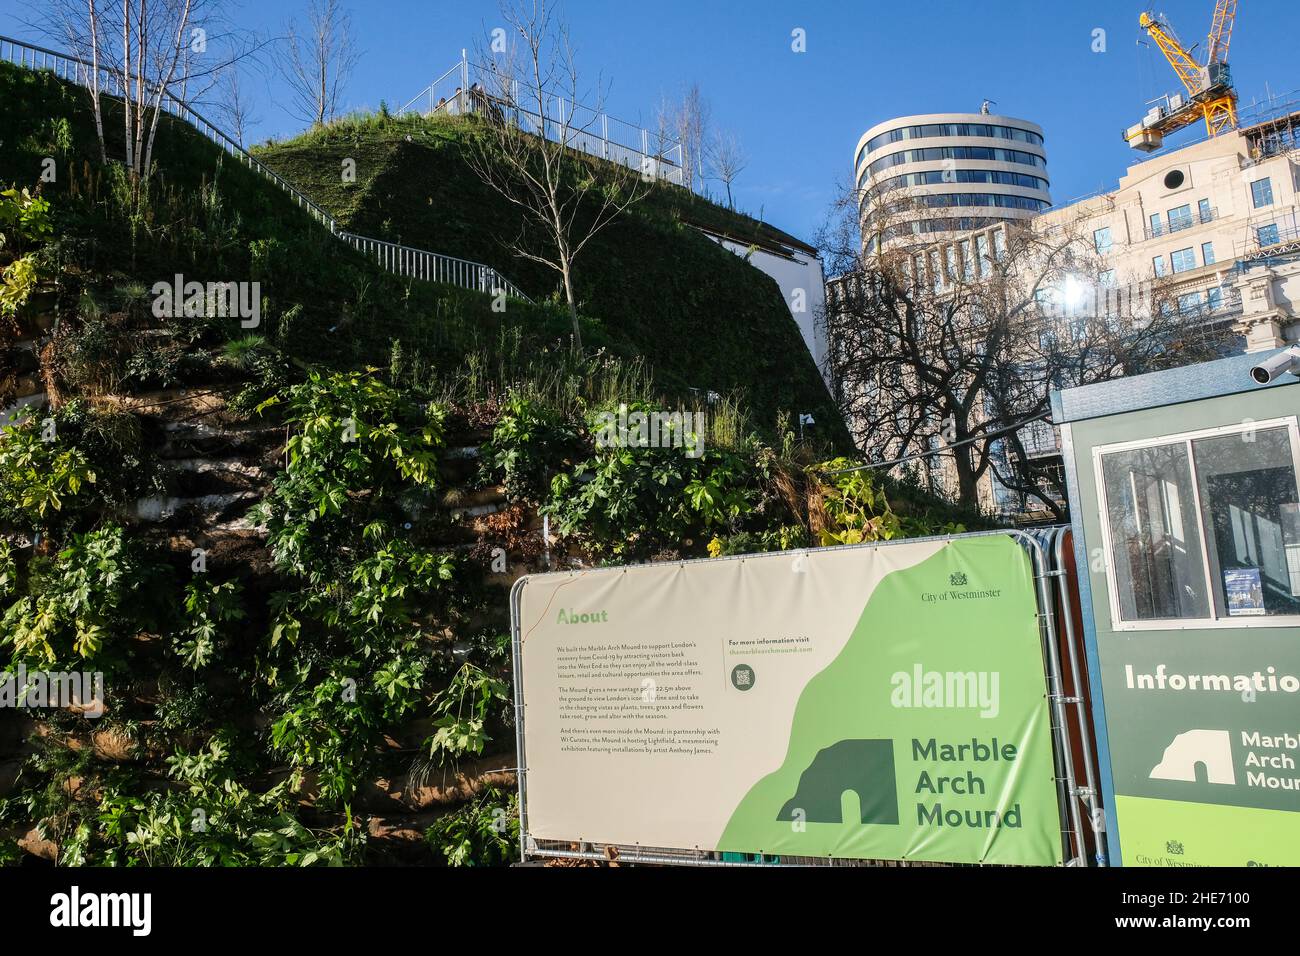 Marble Arch, London, Großbritannien. 9th. Januar 2022. Der letzte Tag des Marble Arch Mound, der mit geschätzten Kosten von mehr als £6 Millionen als das schlechteste Wahrzeichen Londons gilt. Kredit: Matthew Chattle/Alamy Live Nachrichten Stockfoto